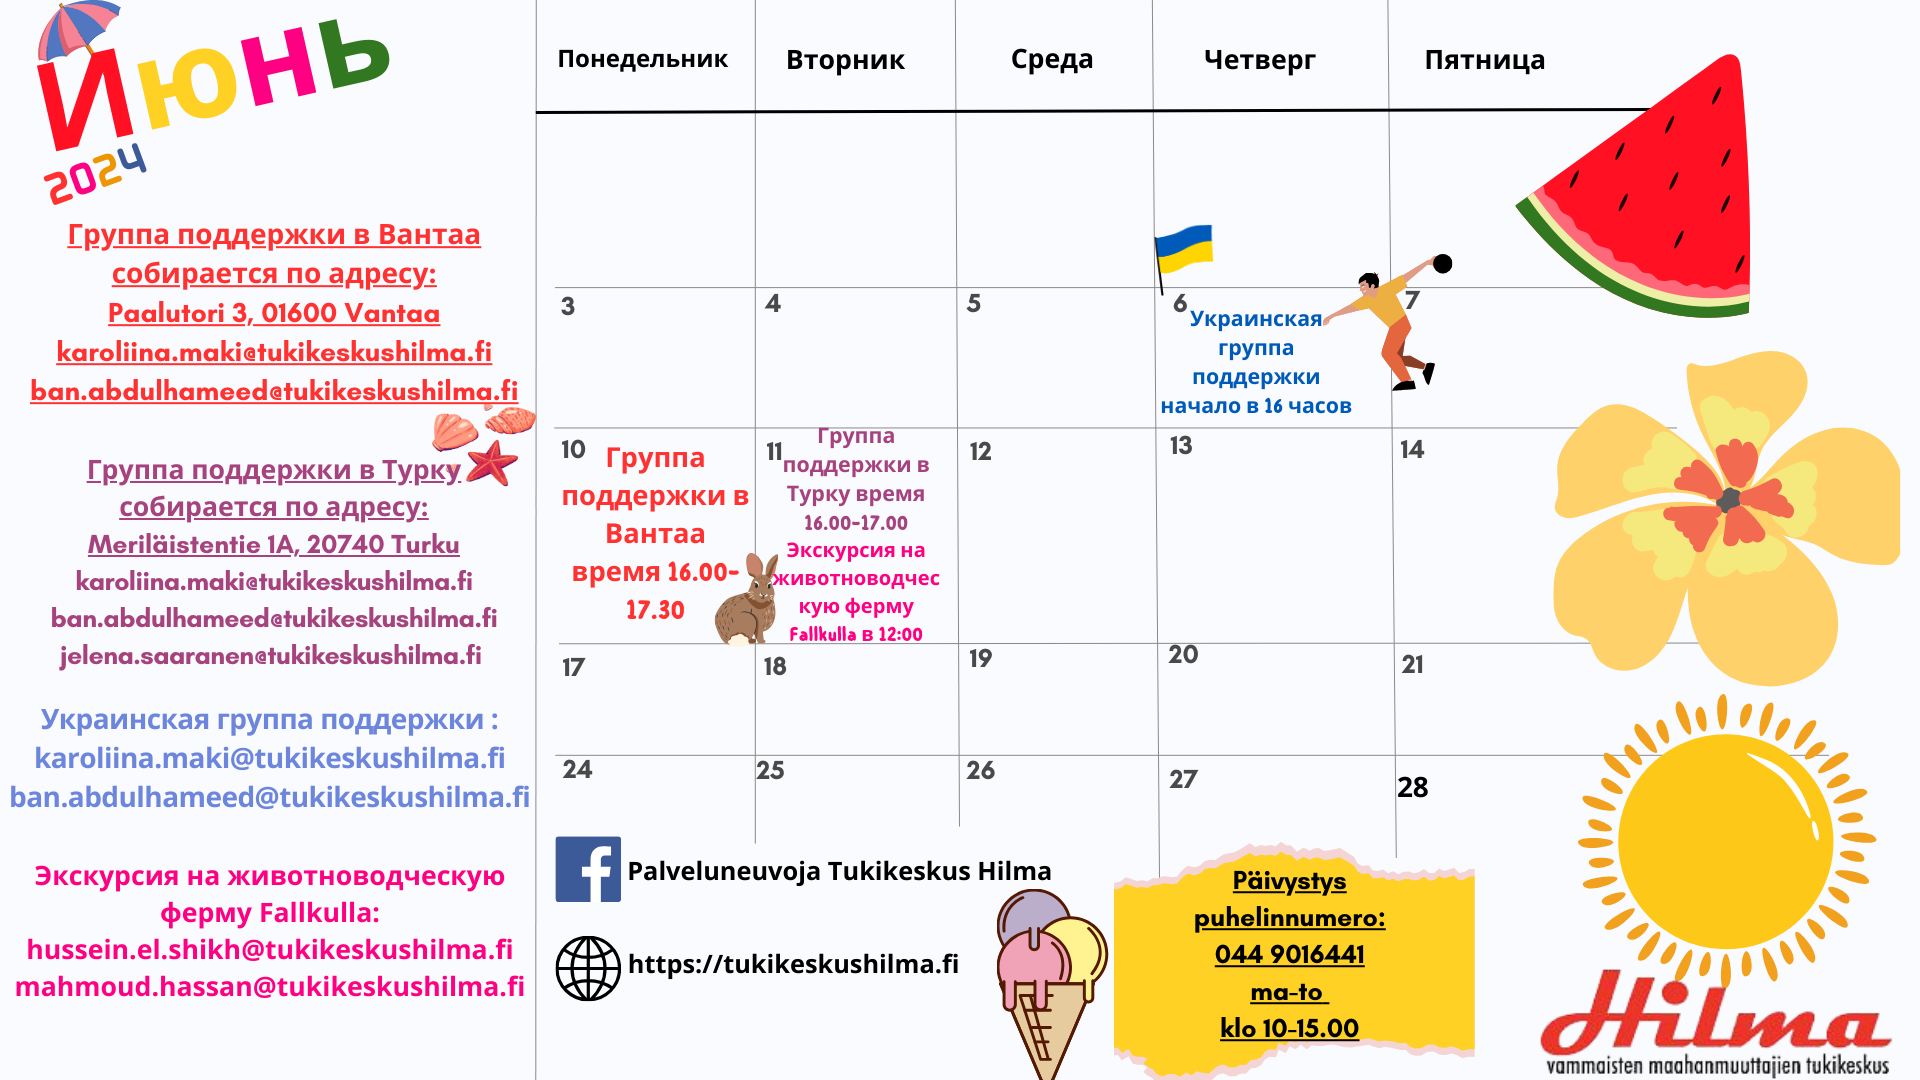 Kesäkuun kalenteri venäjäksi.